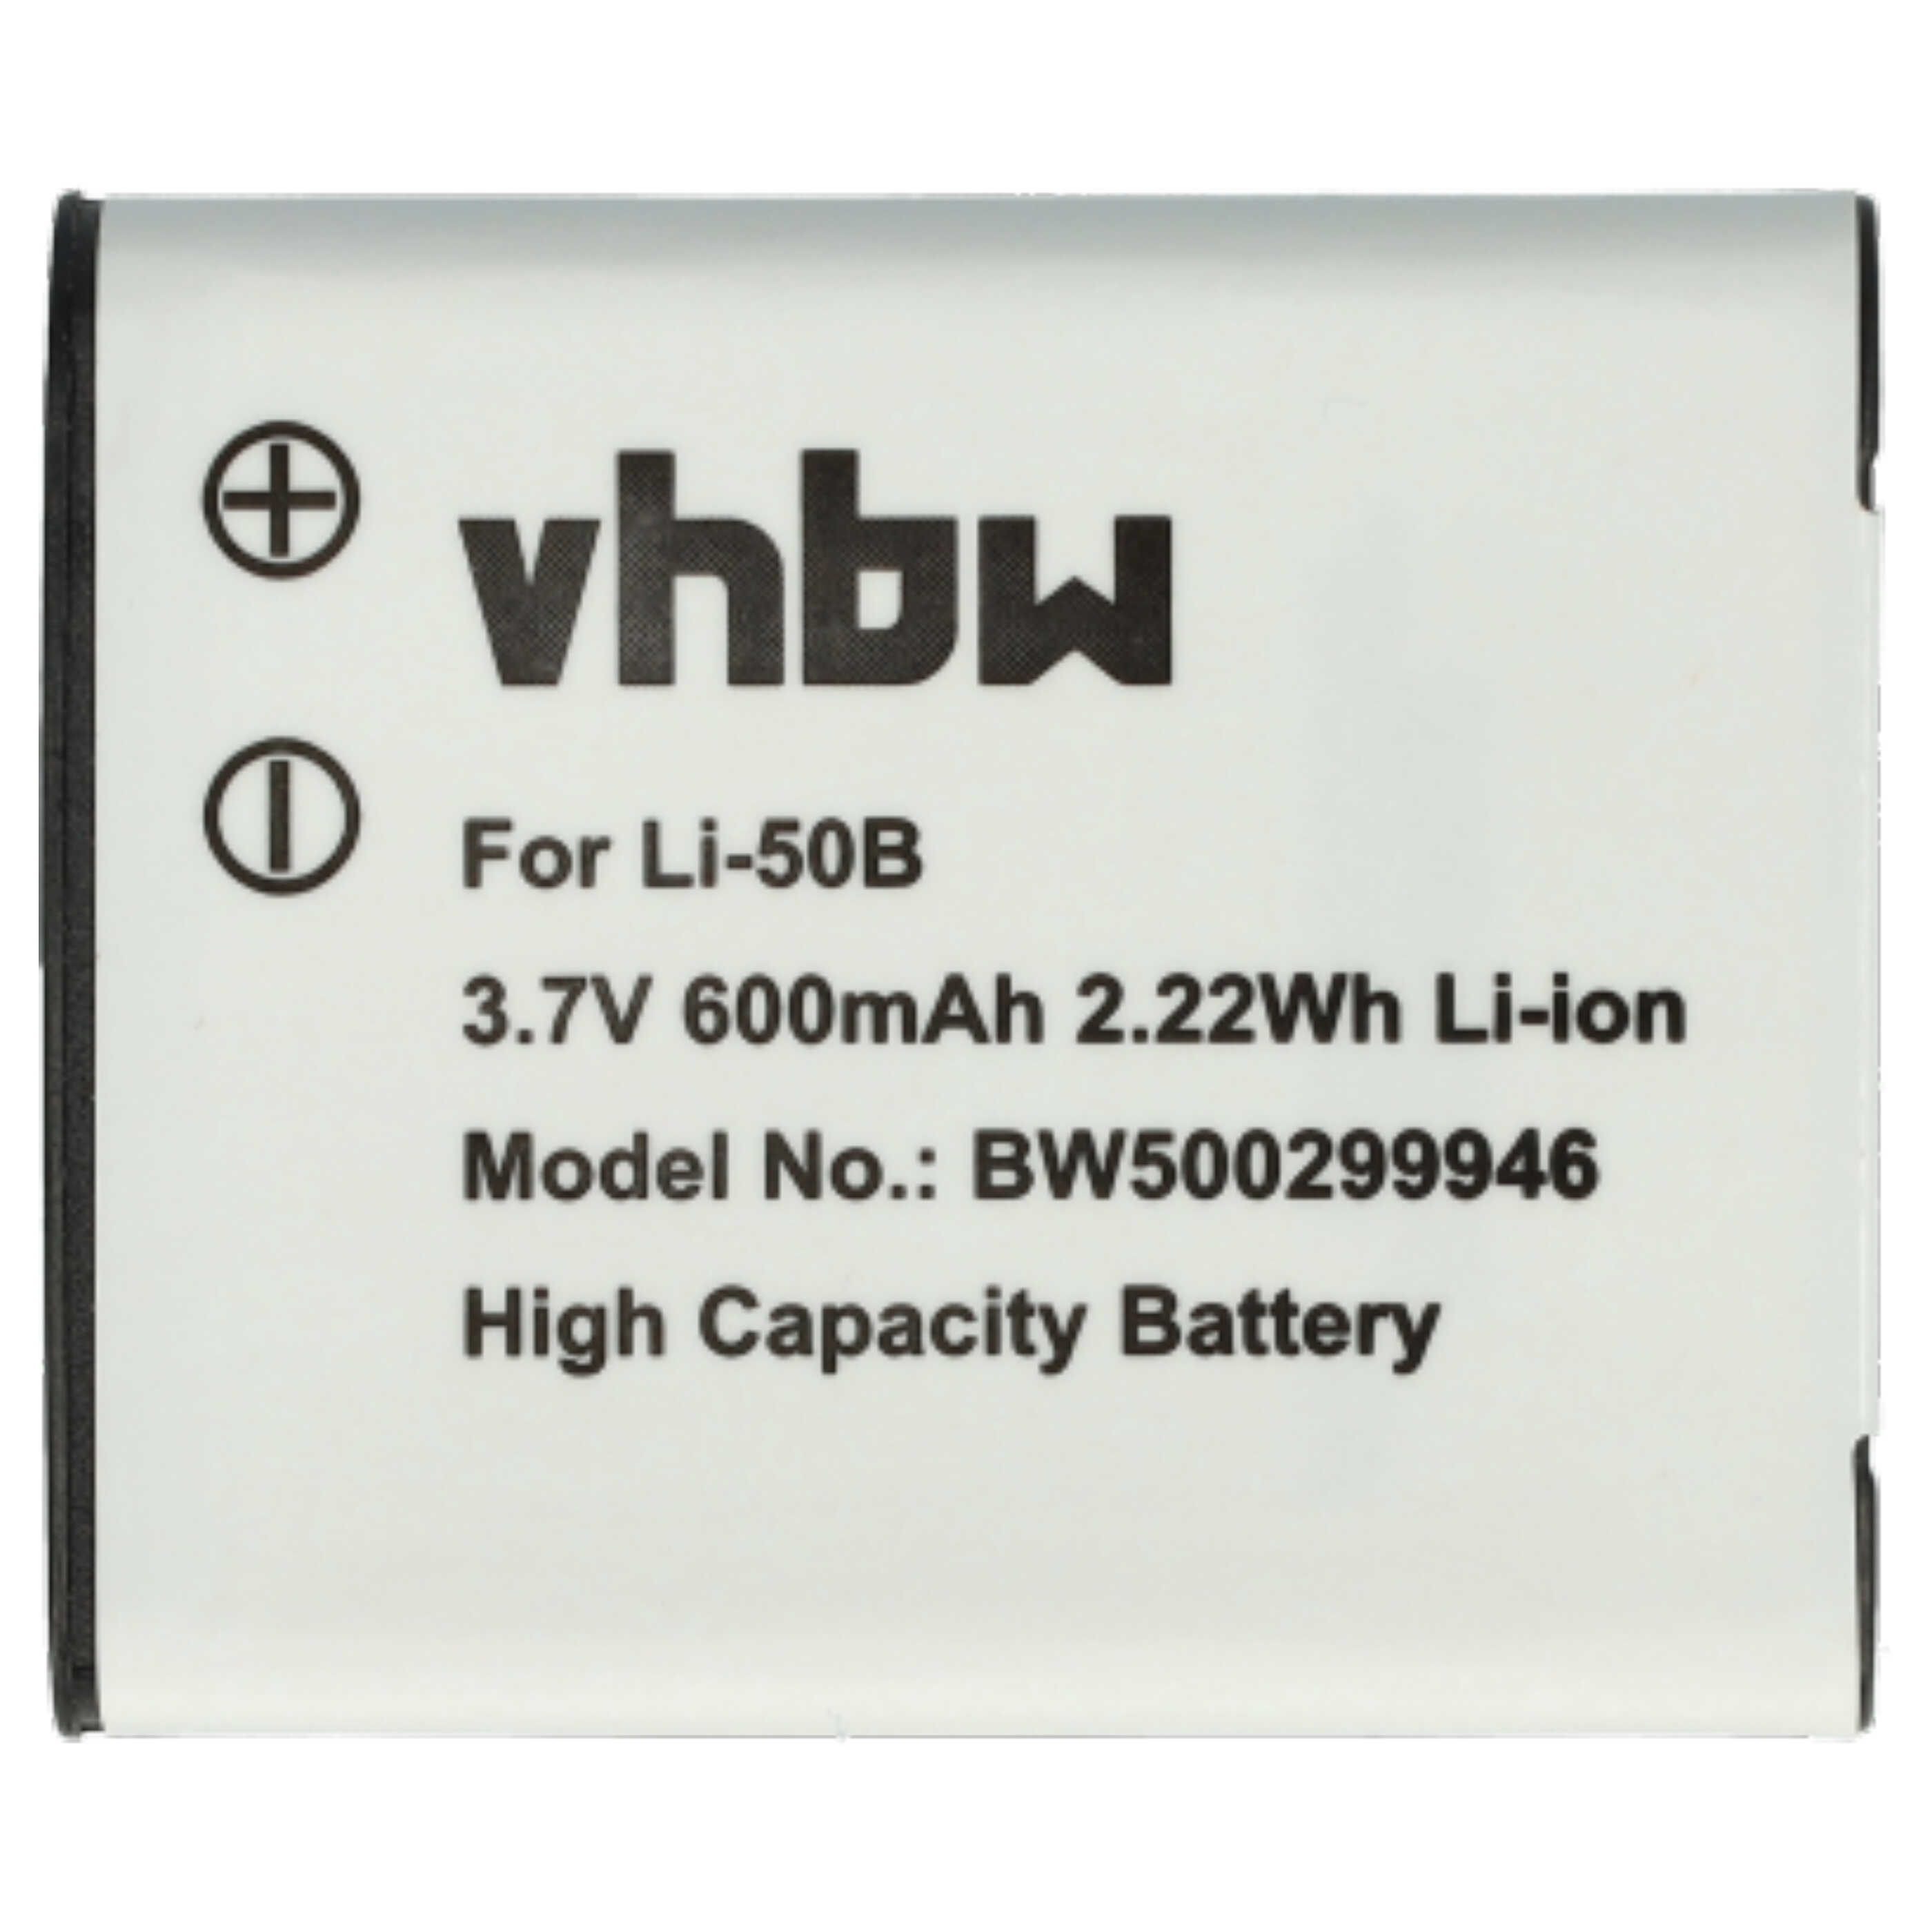 Batterie remplace Pentax D-Li92 pour appareil photo - 600mAh 3,6V Li-ion